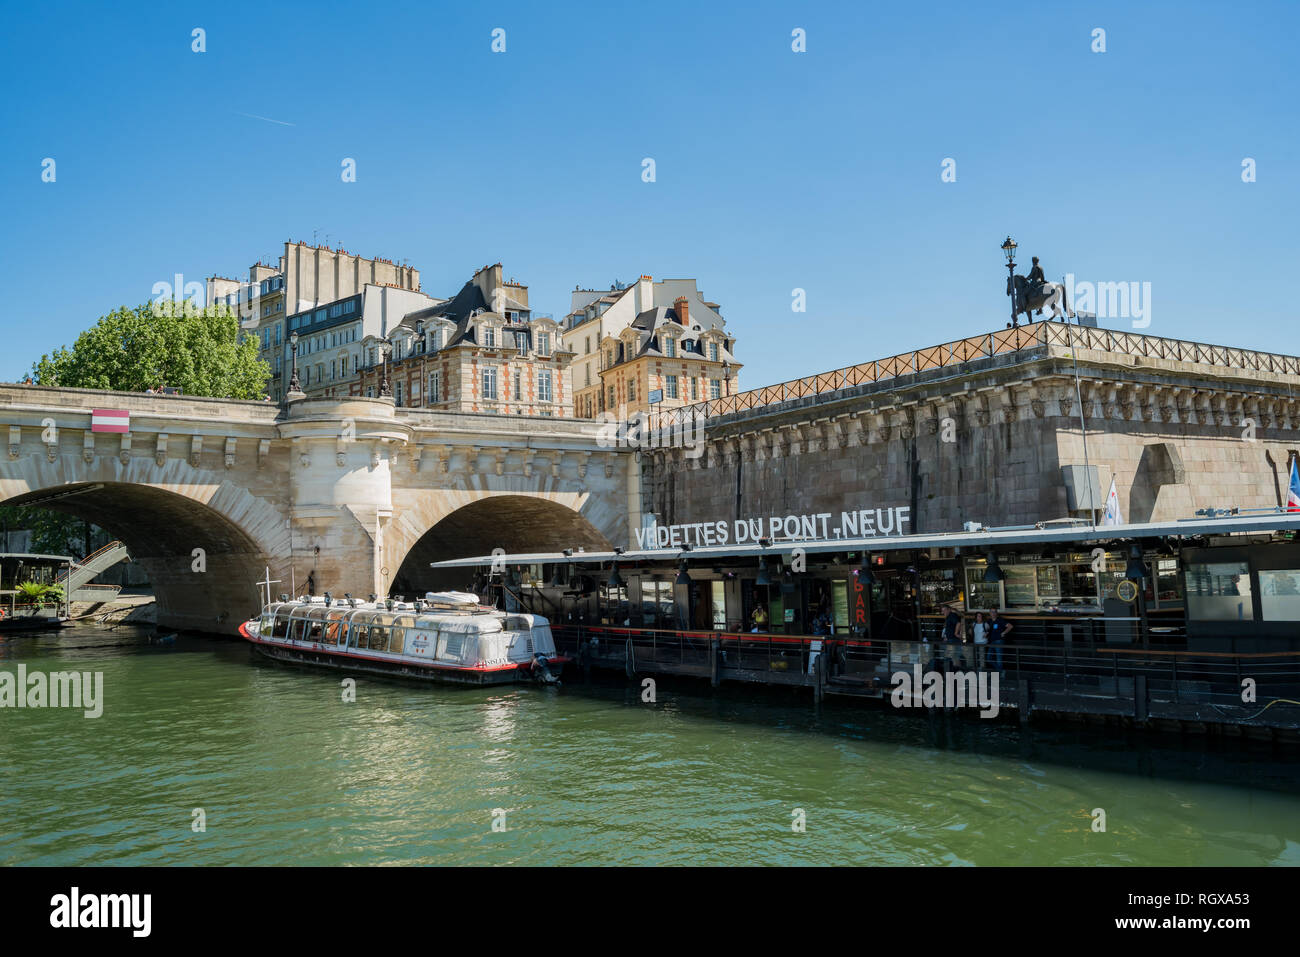 Parigi, 7 maggio: Vedettes Du Pont Neuf porto dal fiume Senna il 7 maggio 2018 a Parigi, Francia Foto Stock